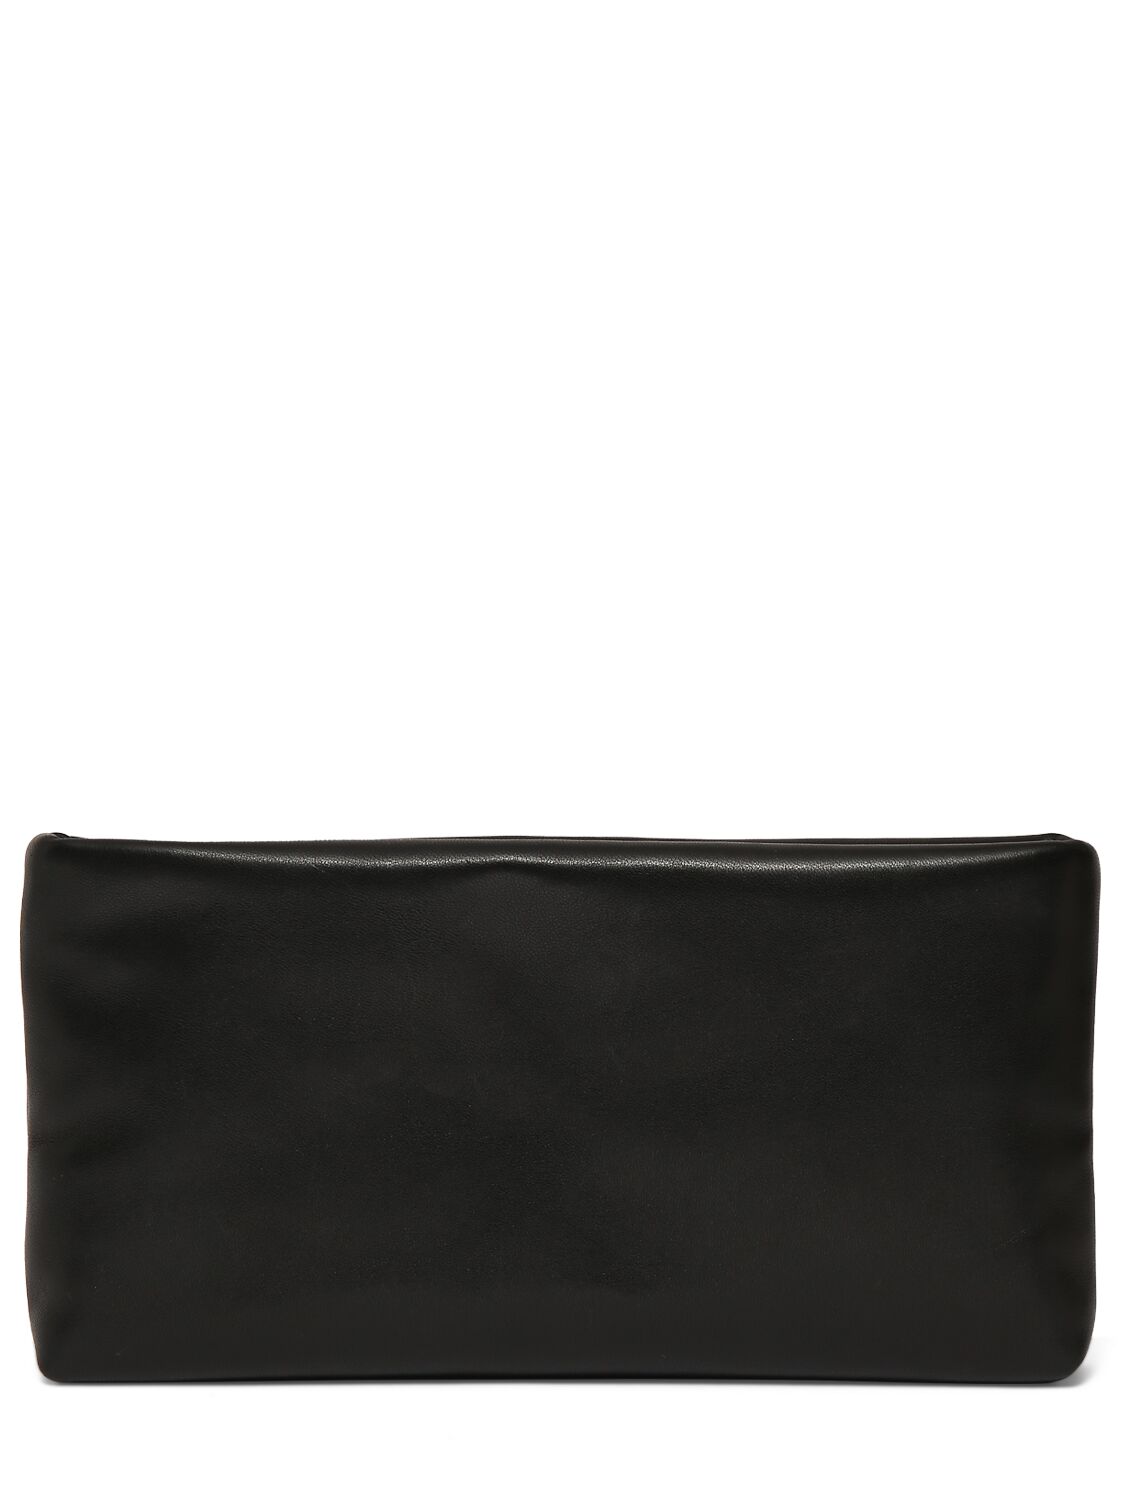 Shop Saint Laurent Calypso Leather Long Zipped Pouch In Black